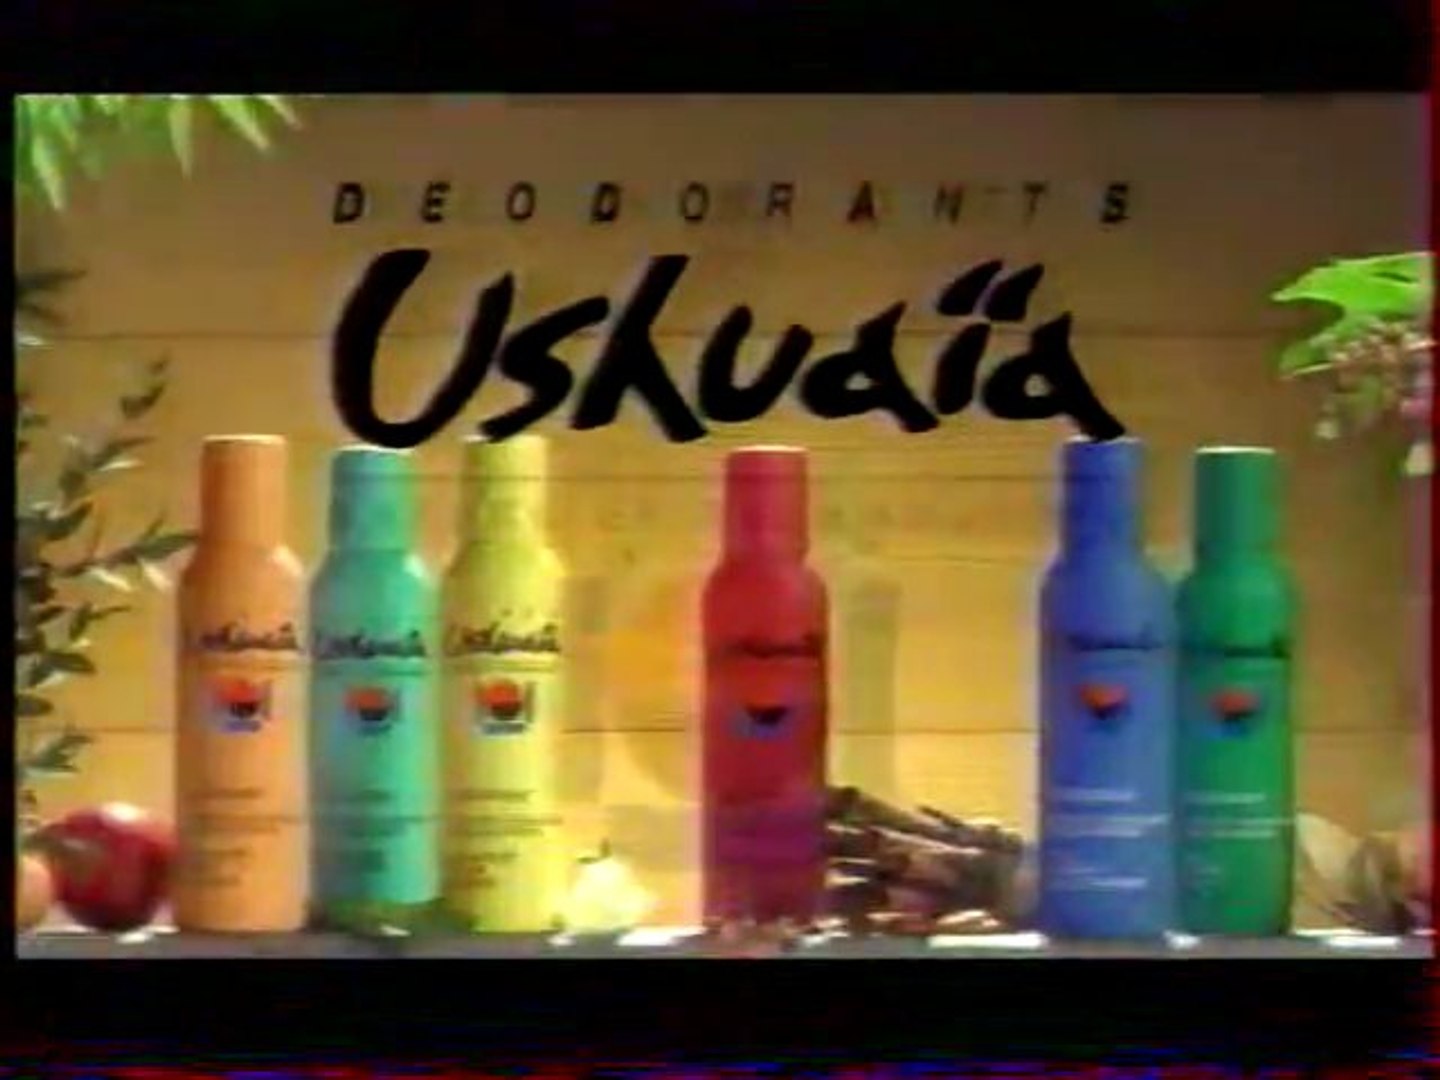 Publicité Déodorants Ushuaïa 1996 - Vidéo Dailymotion